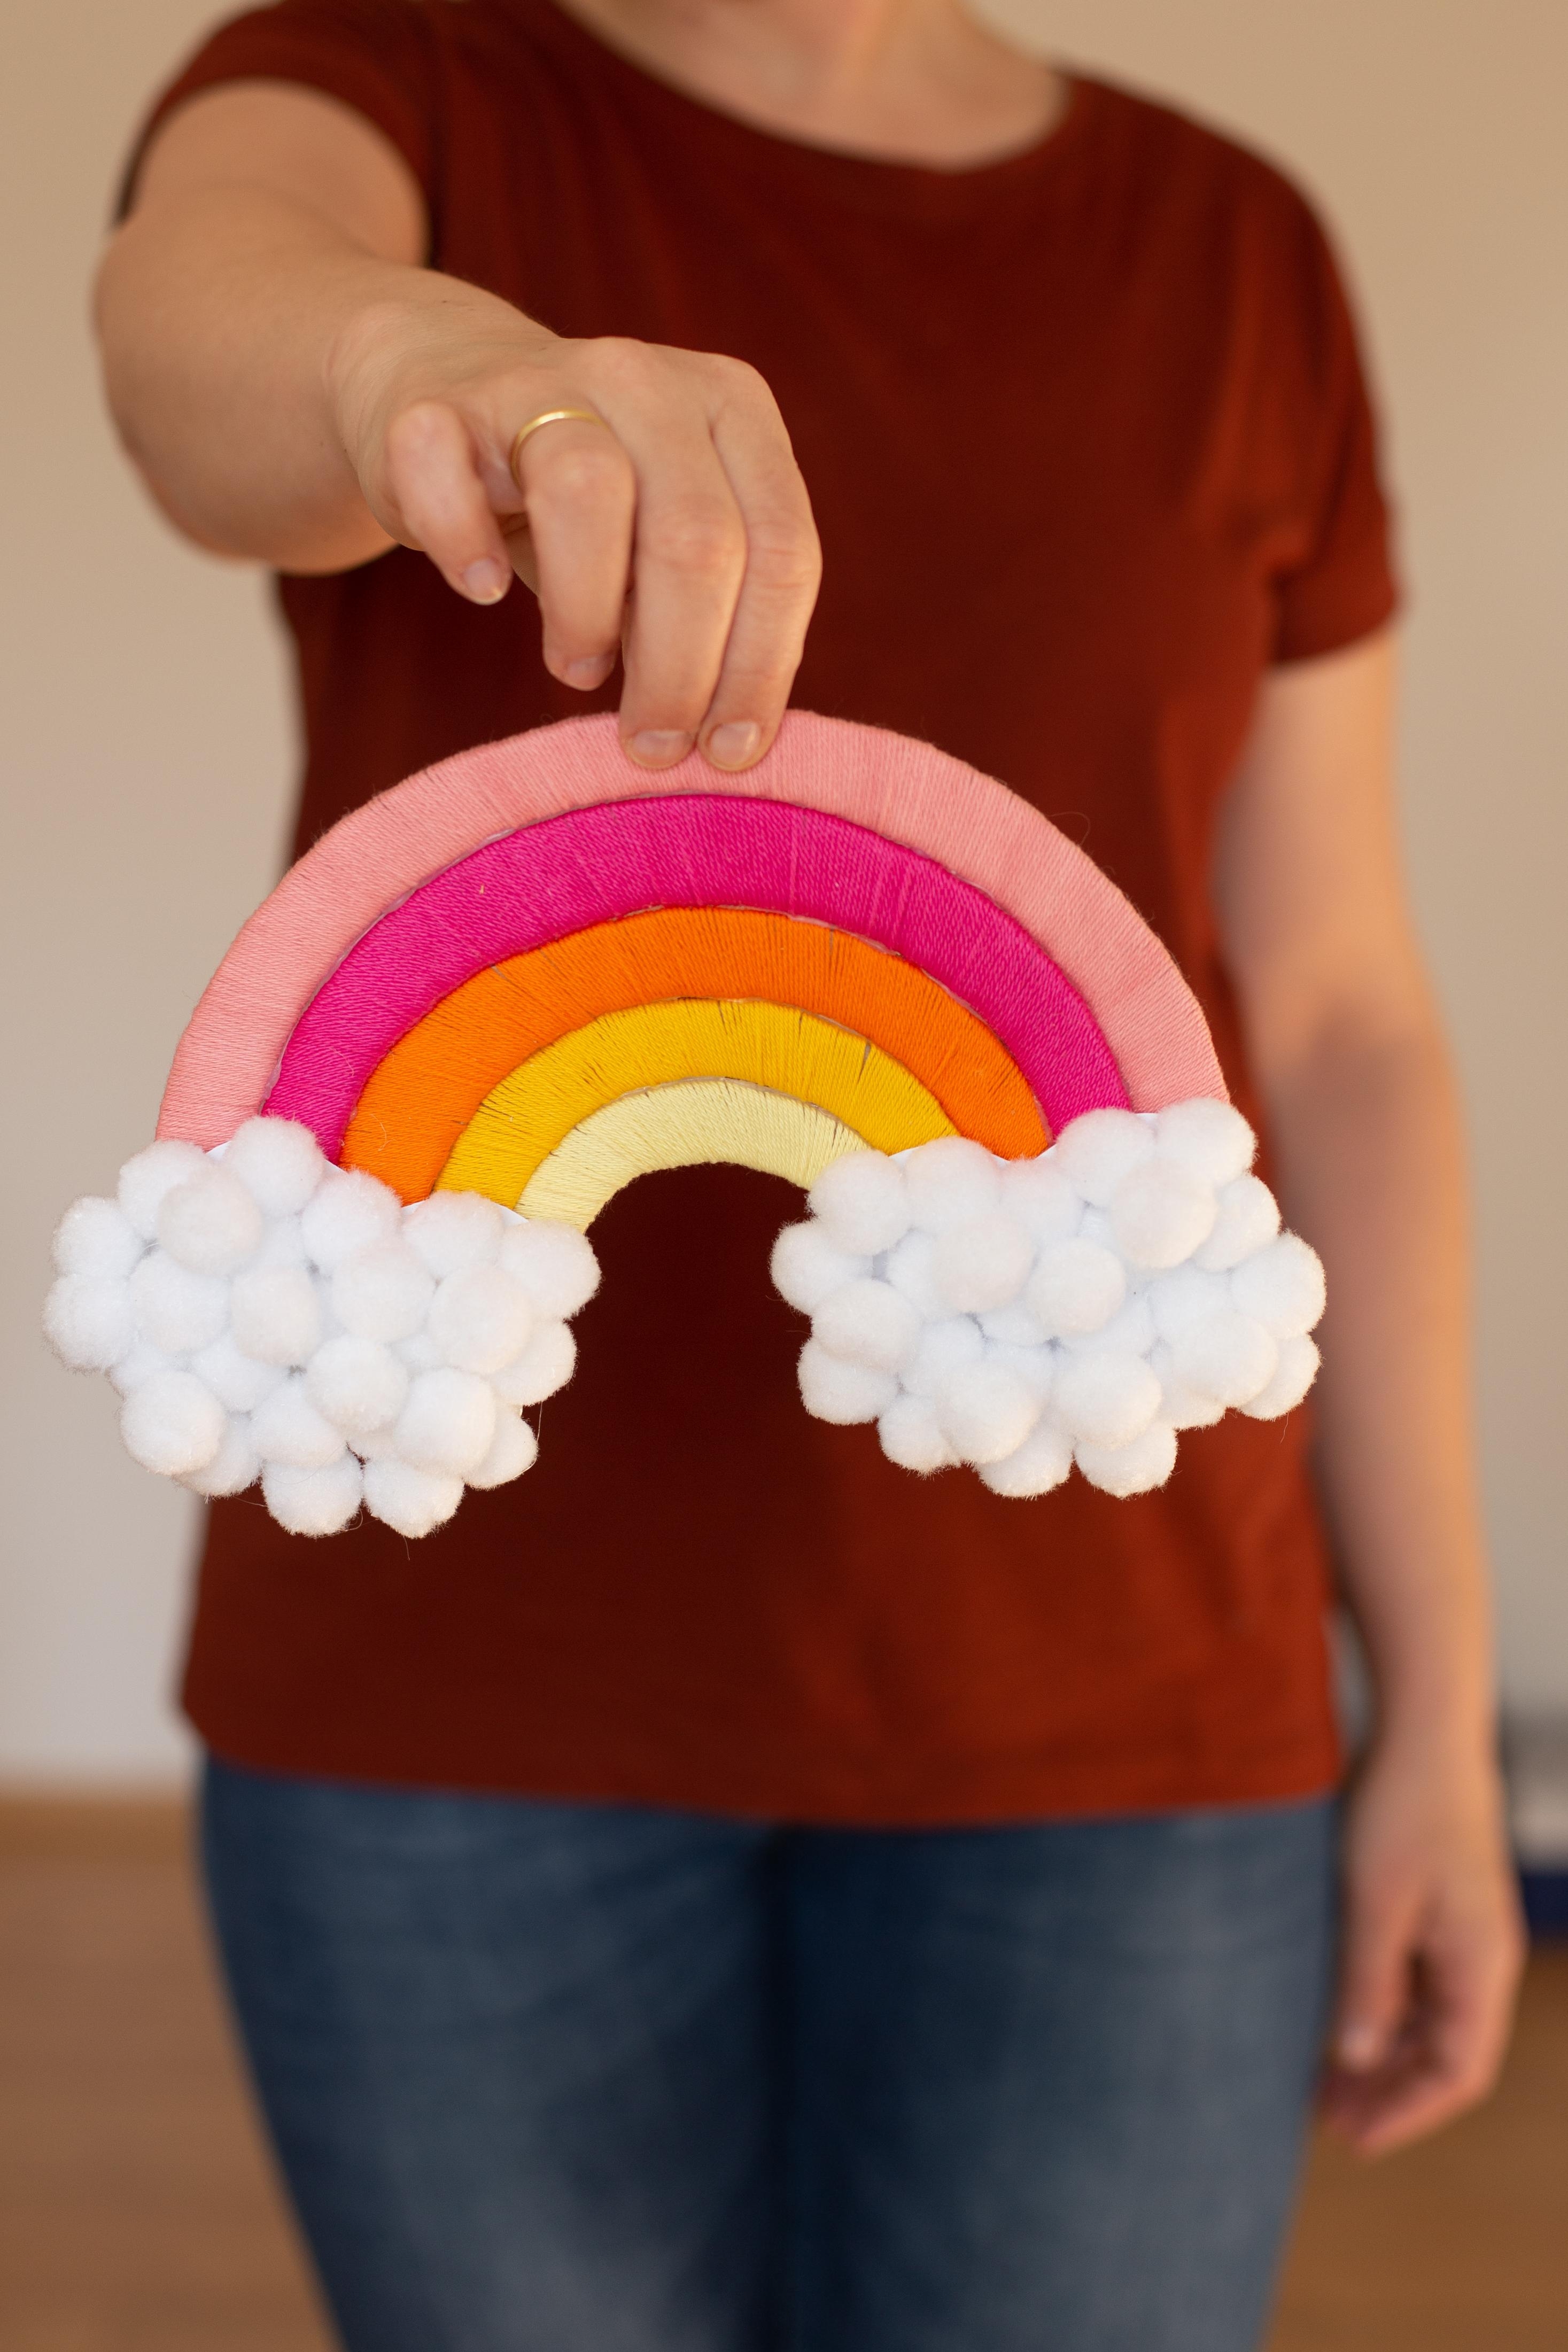 Basteln mit Kindern – DIY Regenbogen aus Pappe und Wolle
#wiebkeliebtdiy #regenbogen #bastelnmitkindern